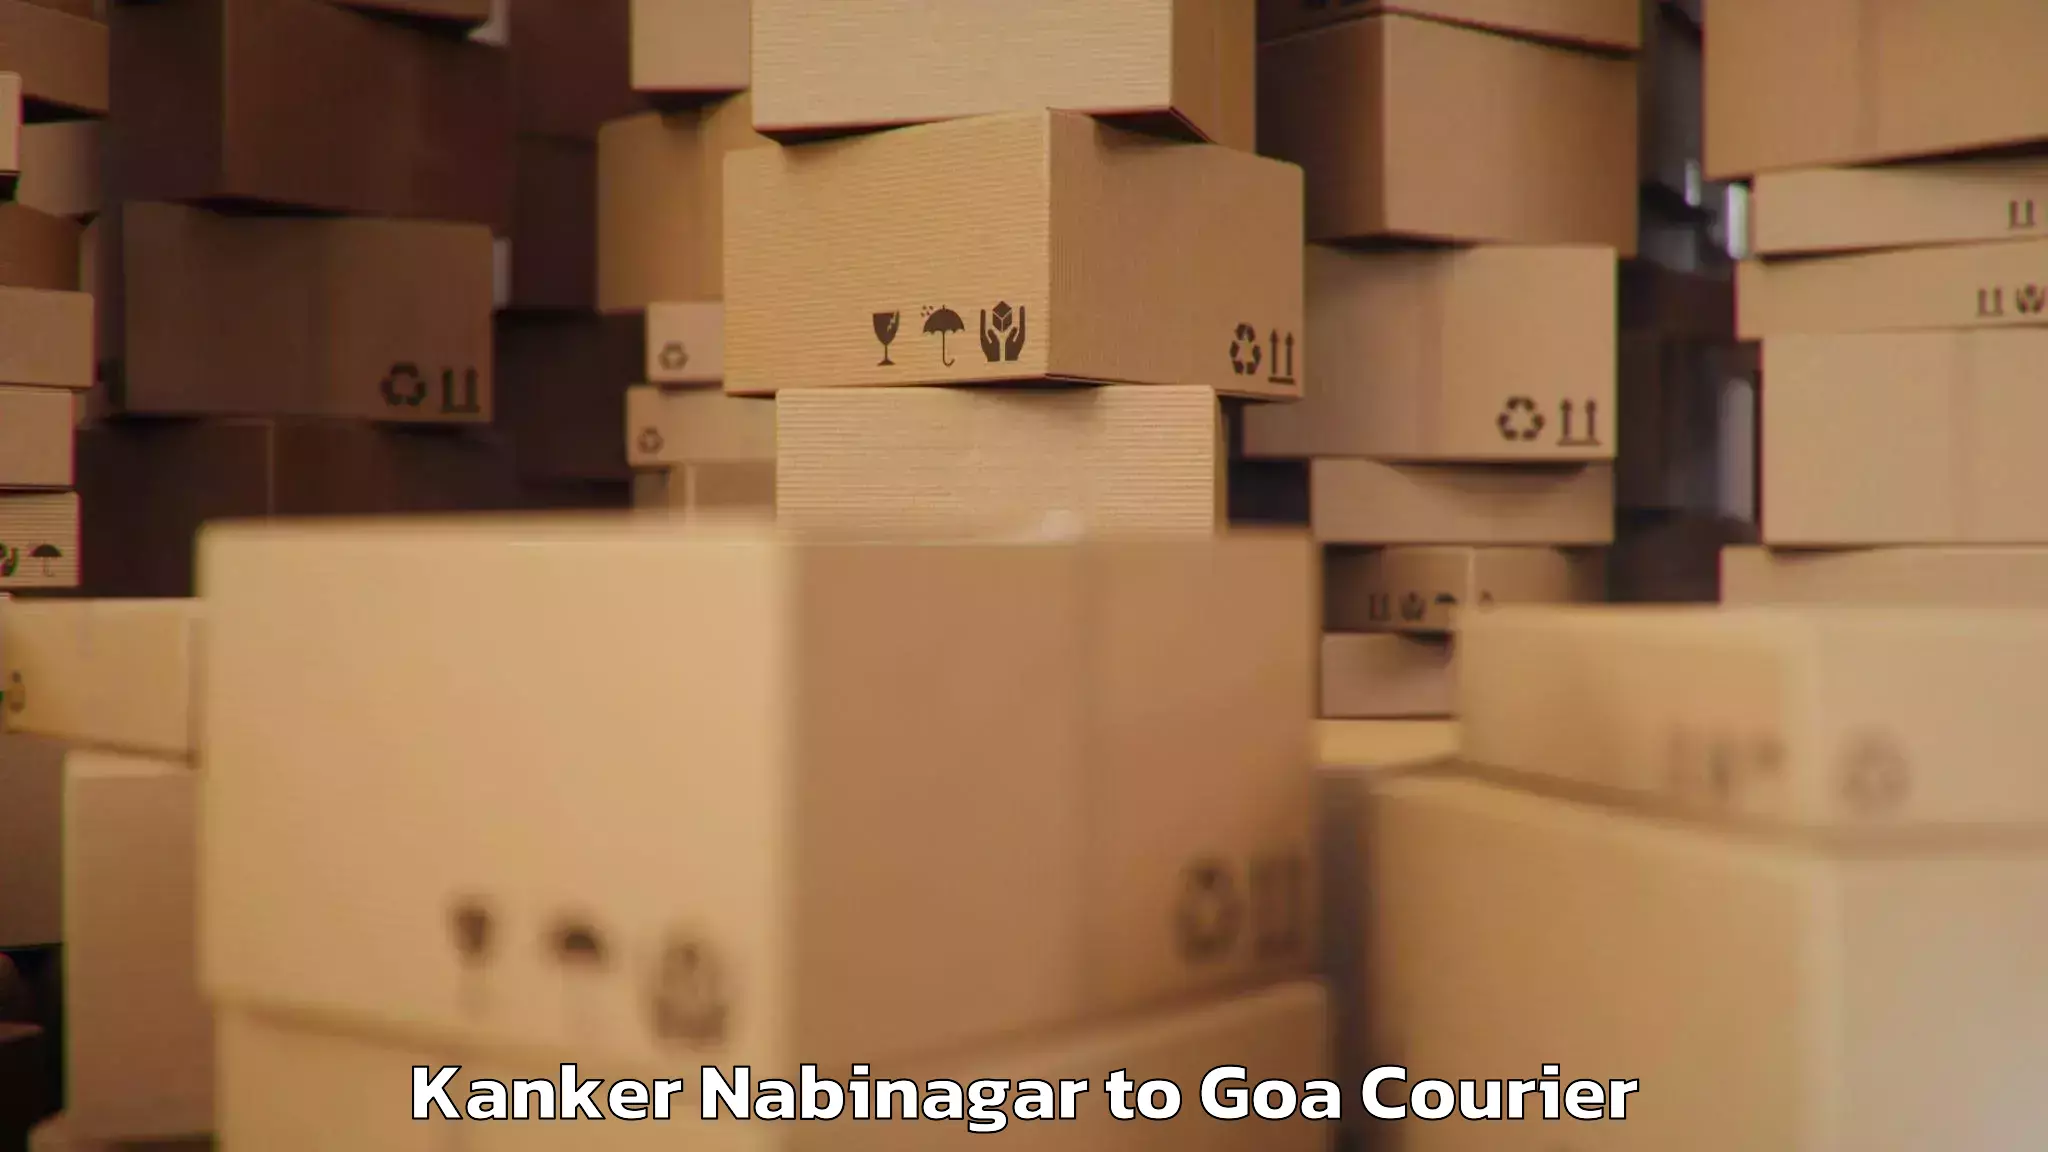 Baggage shipping rates calculator Kanker Nabinagar to Vasco da Gama